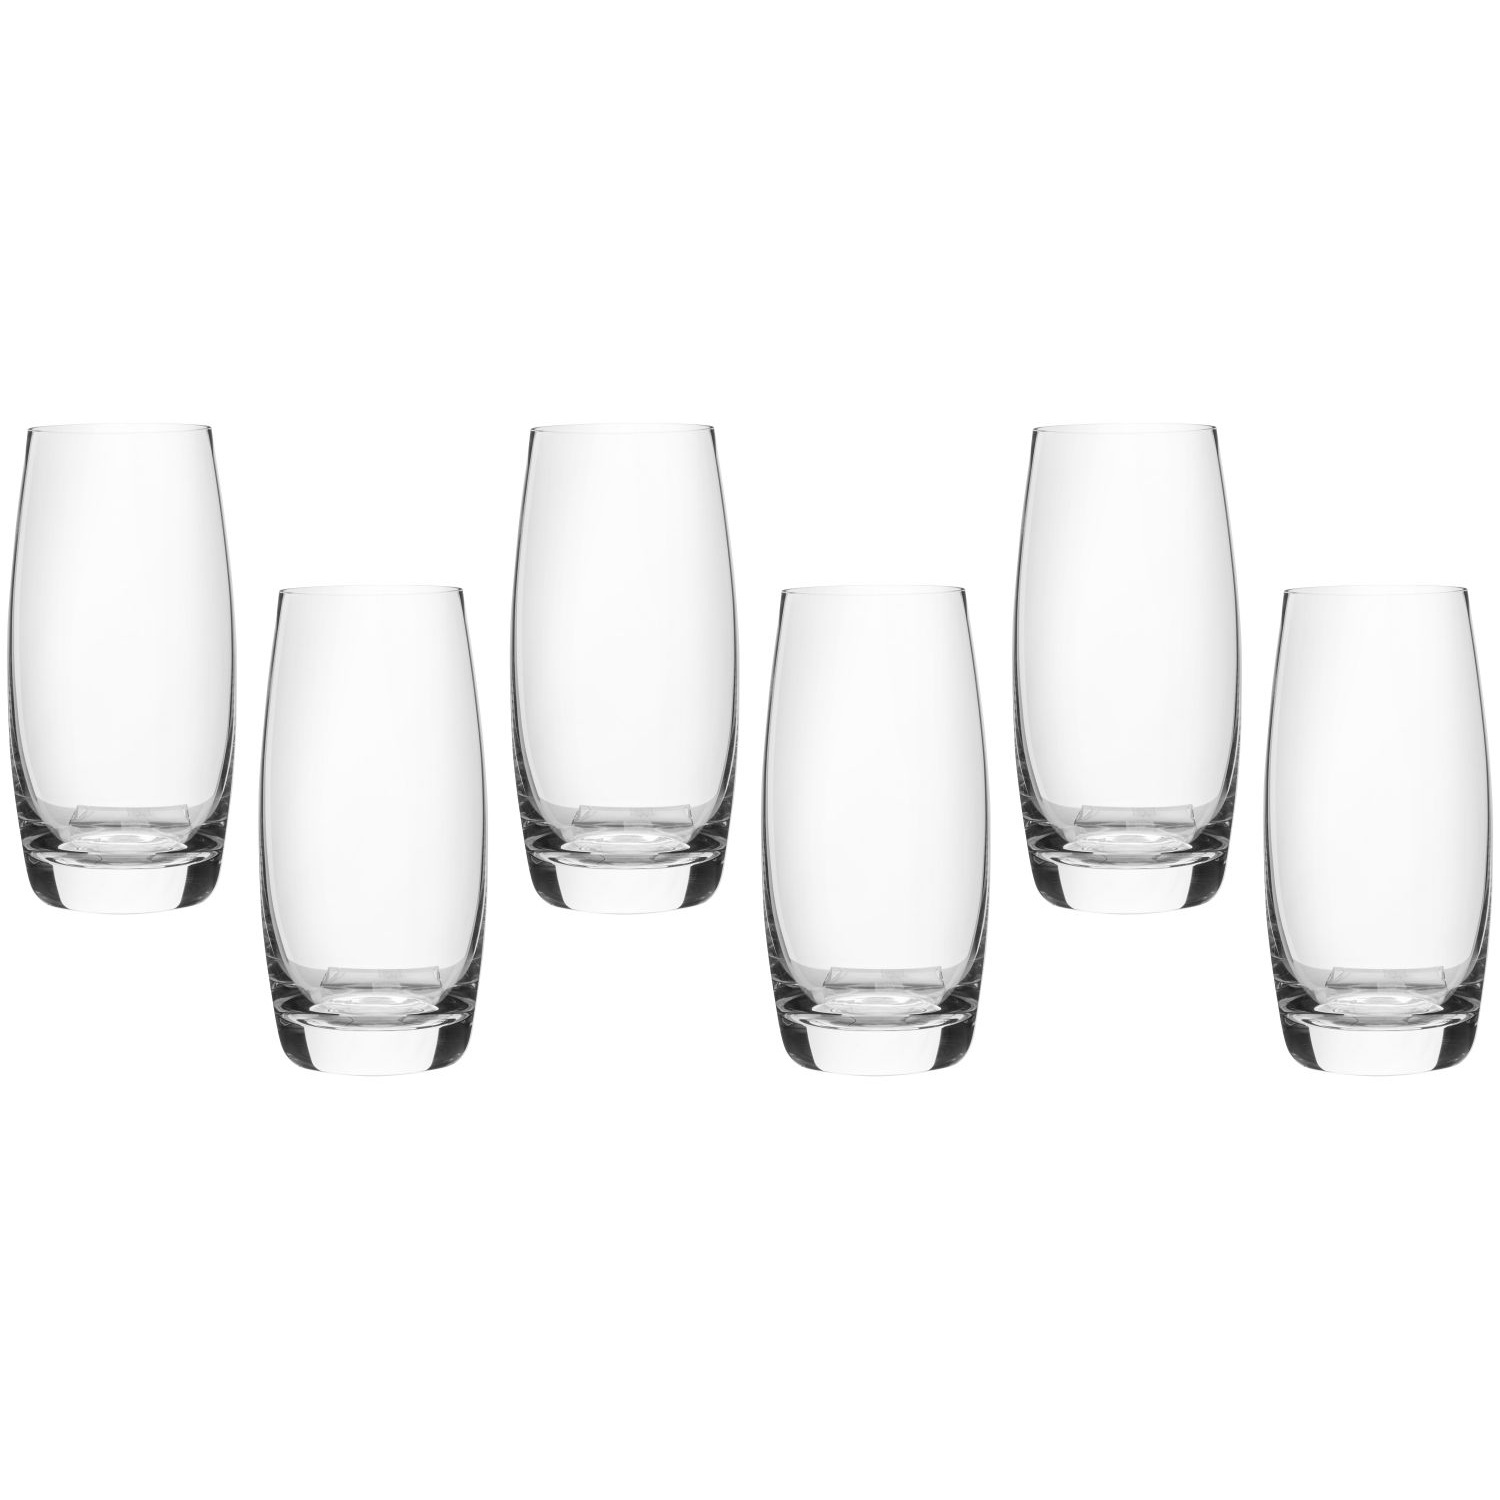 Набор стаканов Maxwell & Williams Cosmopolitan для воды 0,4 л набор стаканов борисовский хрусталь 6х75 мл в ассортименте